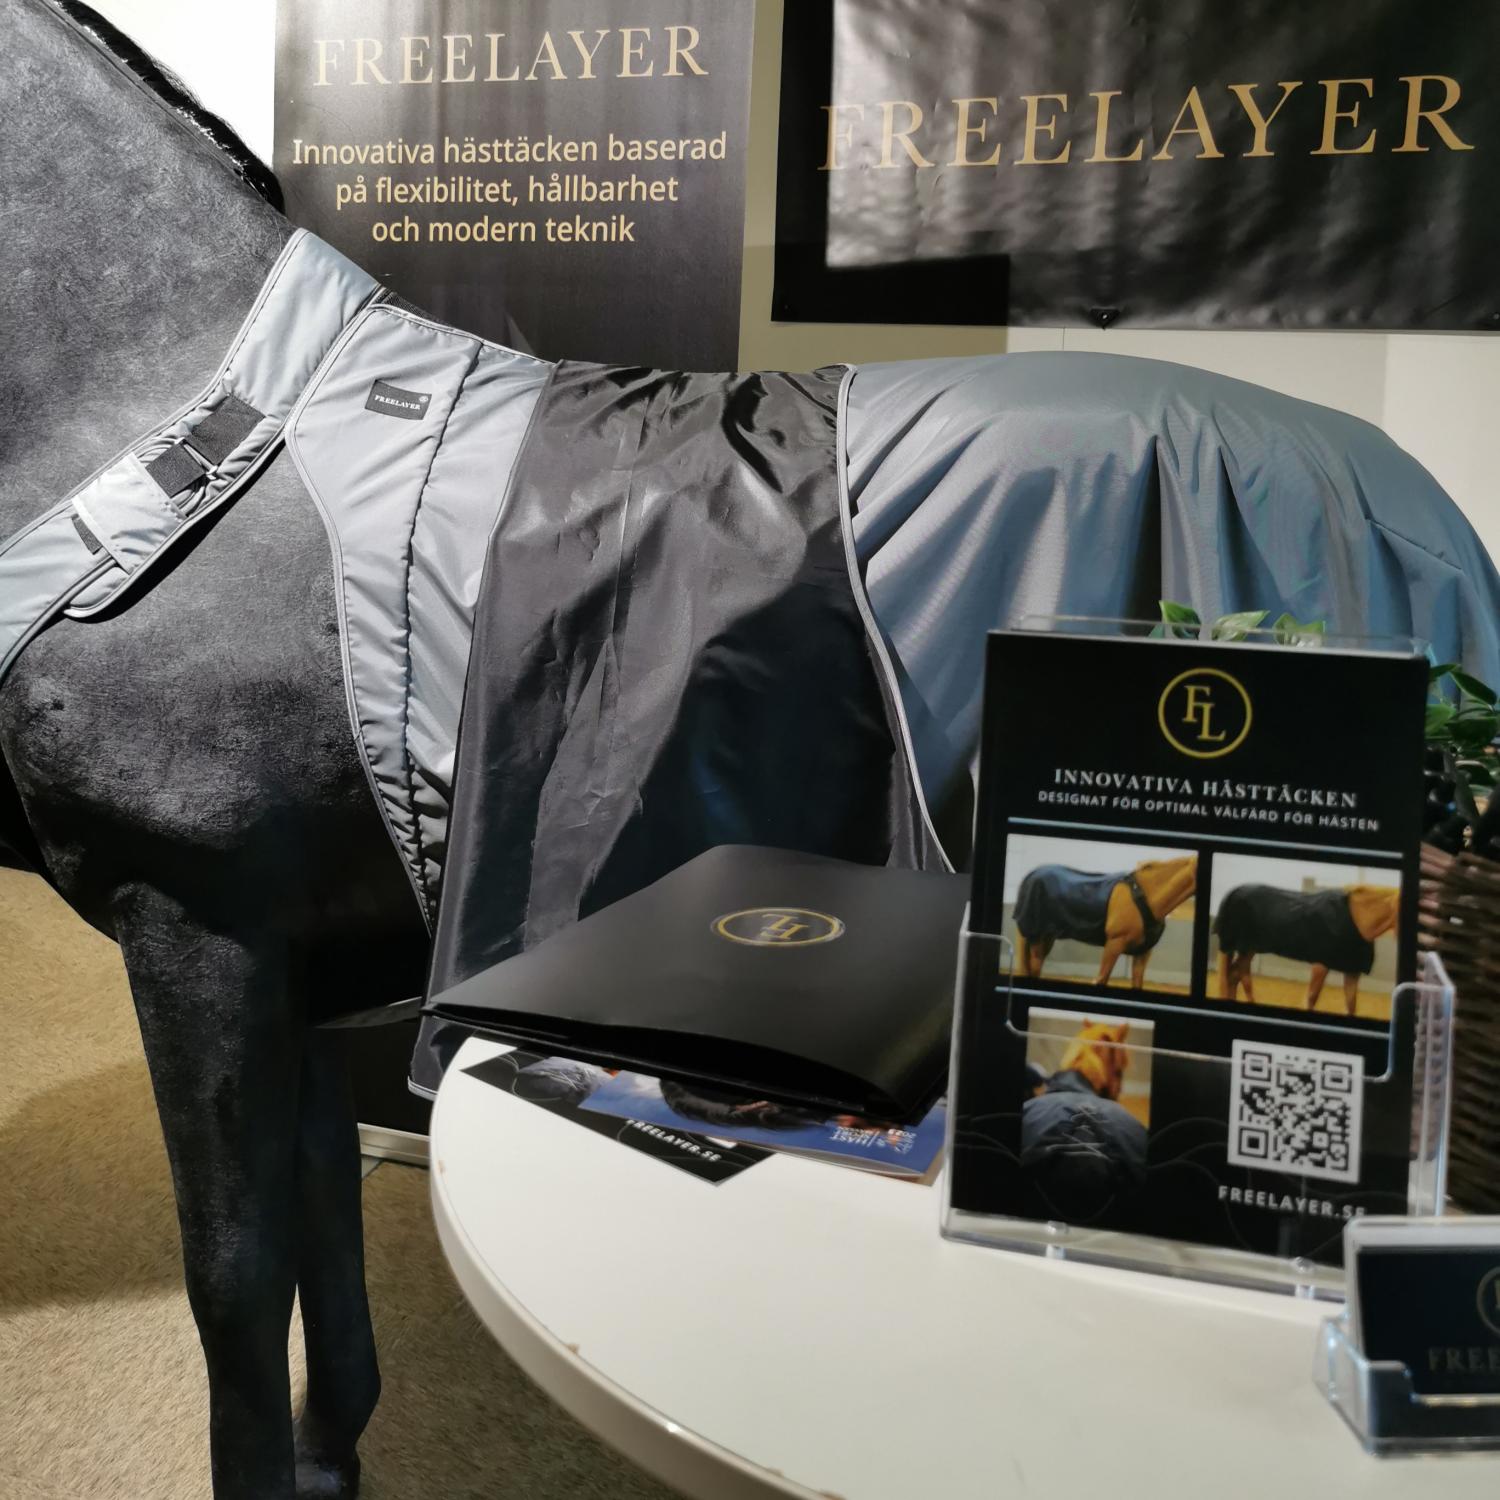 Freelayer introducerar sin banbrytande nya design i horsewear på Hästsportmässan i Borås. Med hållbarhet och hästens välfärd som kärnvärden, visar vi stolt upp vår senaste innovation.